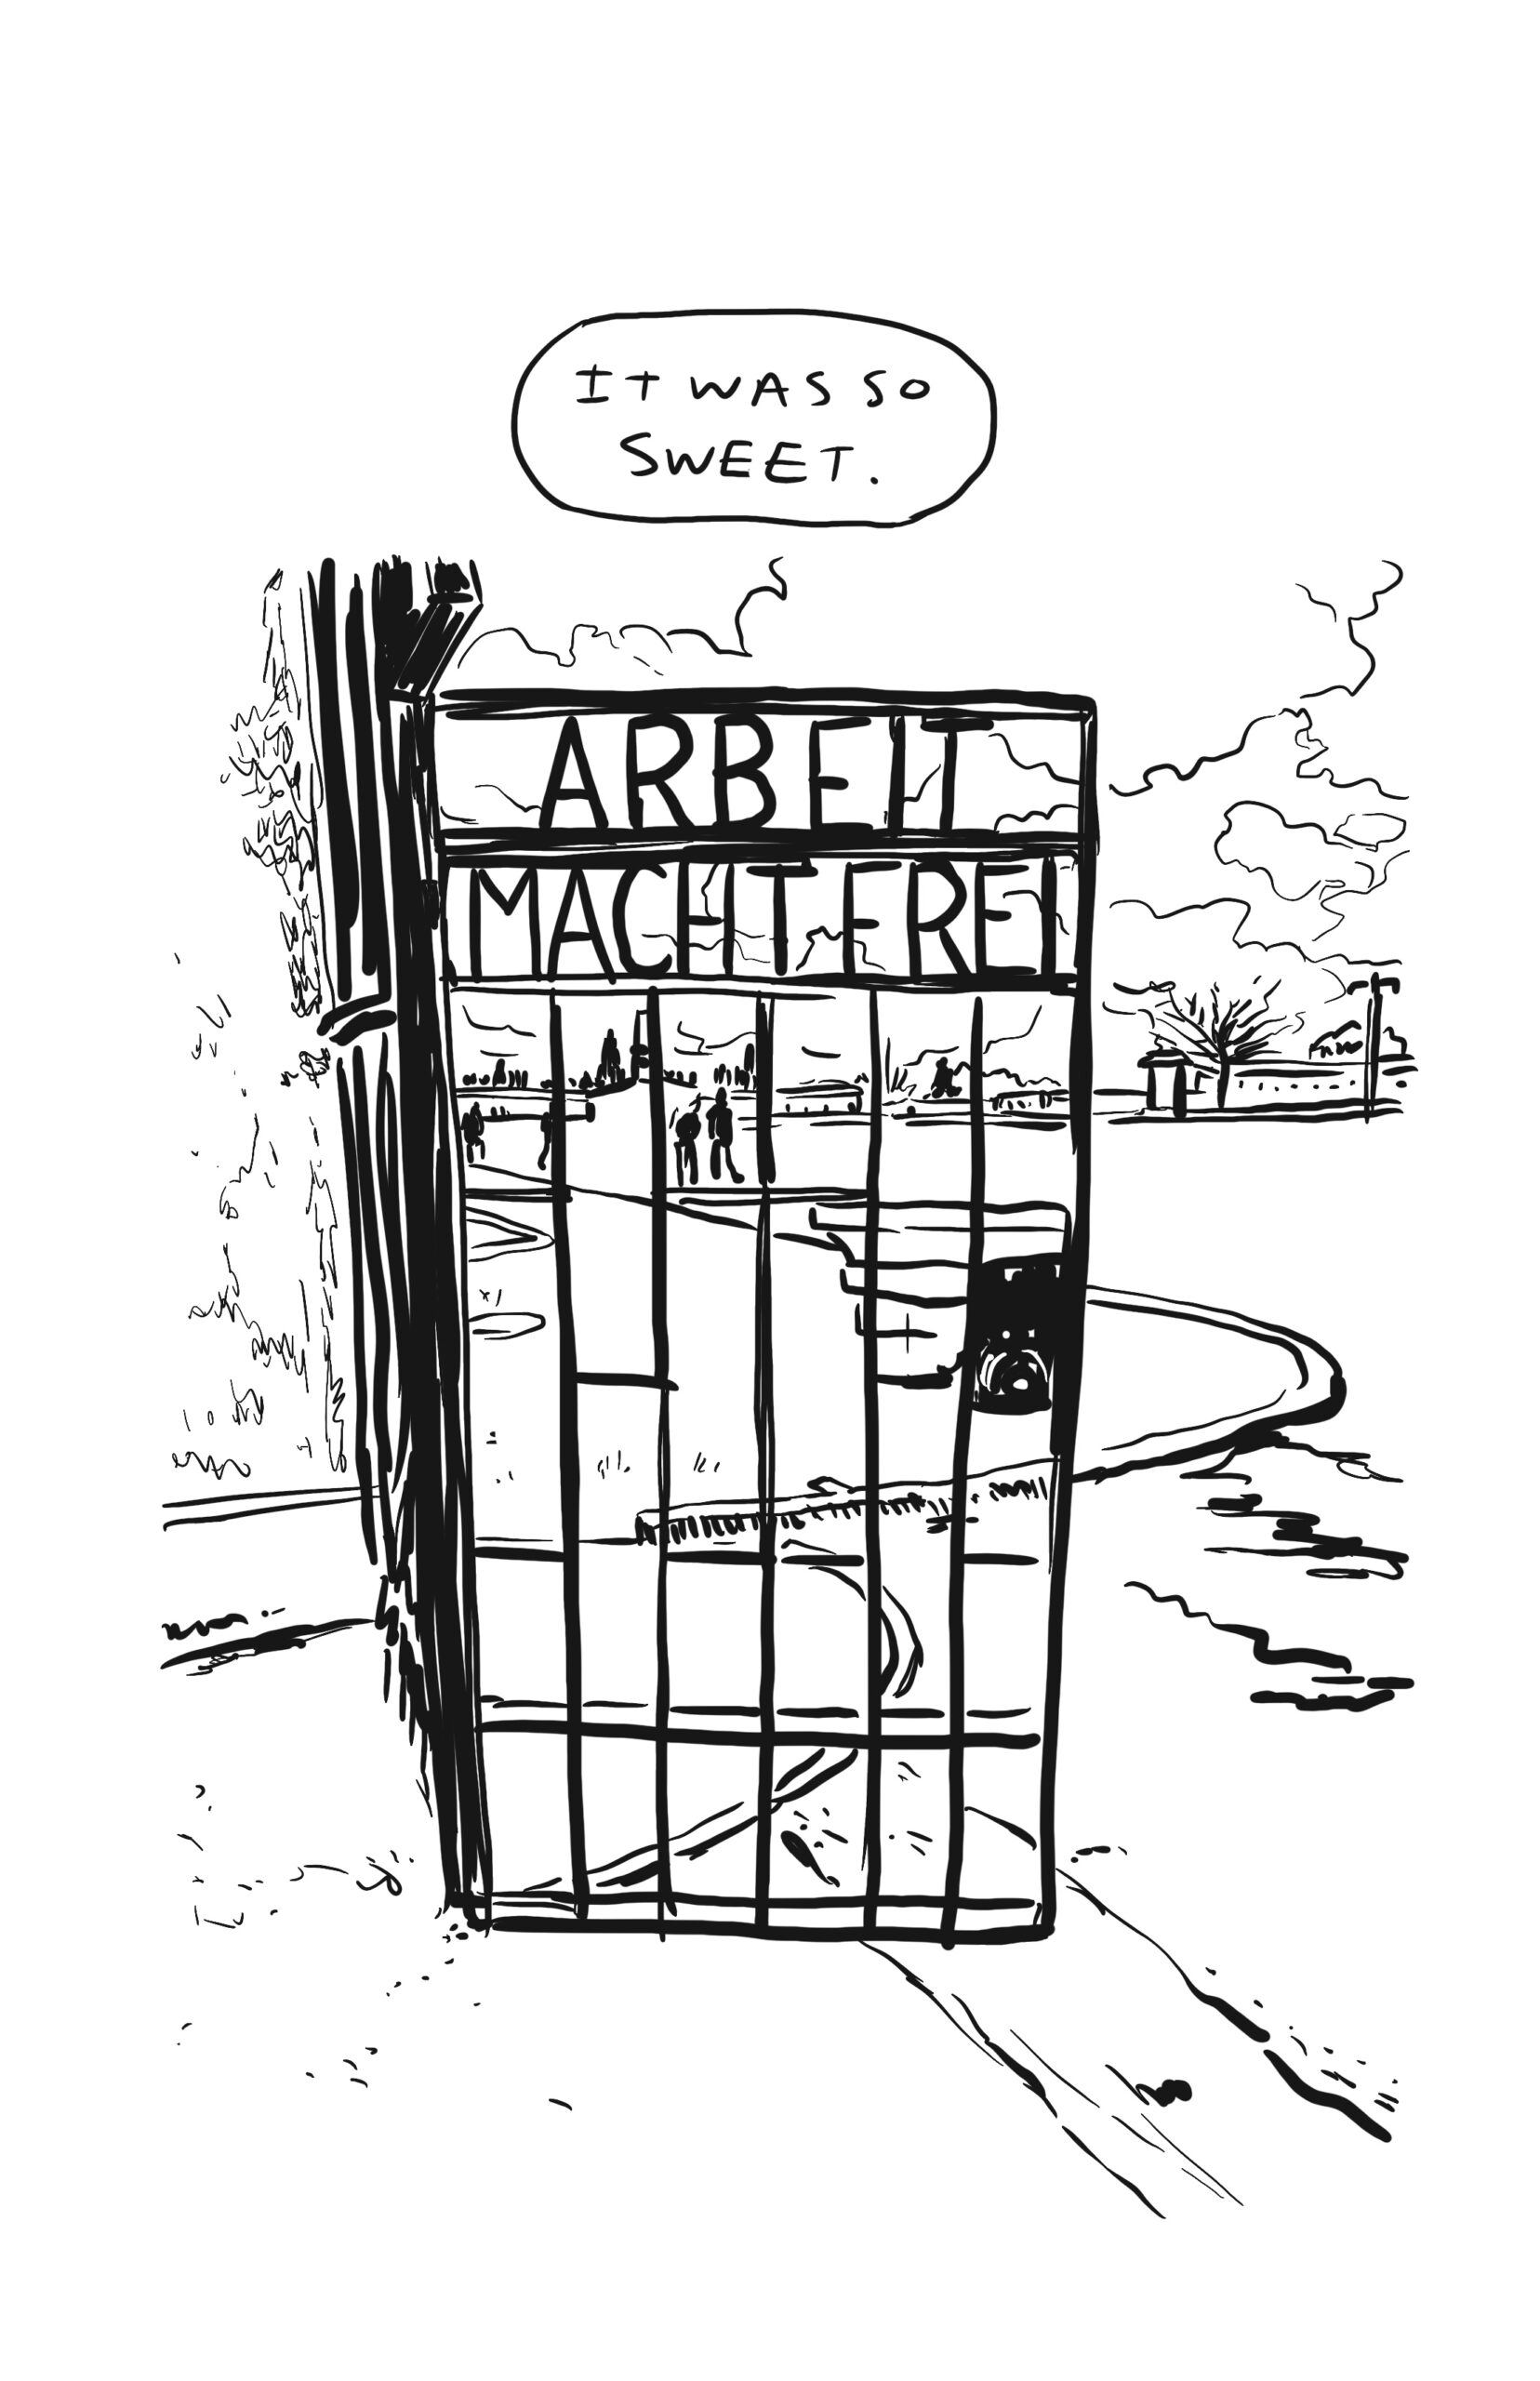 â€œIt was so sweet.â€
Instead of the same traced drawing, this page shows the gate to the Sachsenhausen camp, reading â€œArbeit Macht Frei.â€ Beyond it is a field and walking path, with people walking and clouds filling the sky.